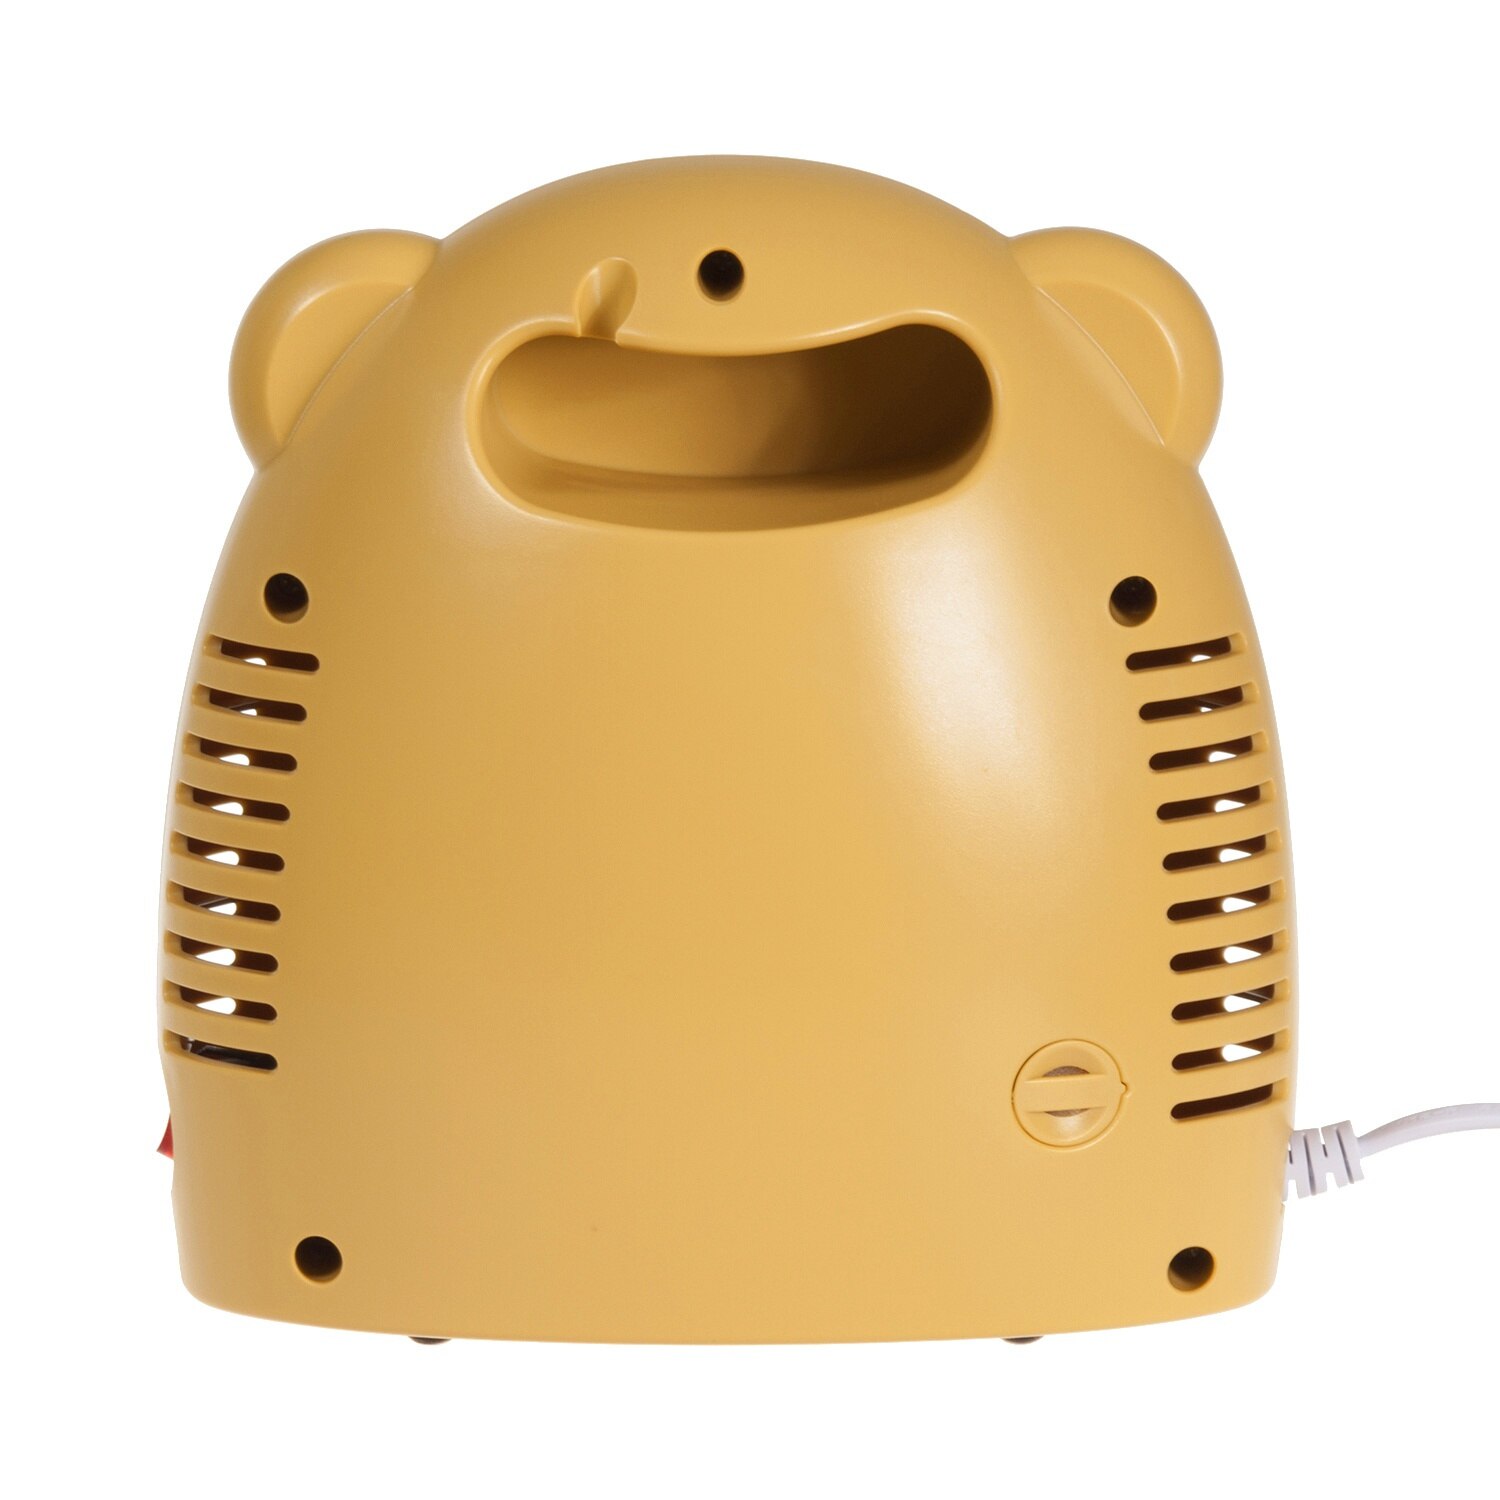 Inhalateur électrique Promedix PR-825 à prix bas